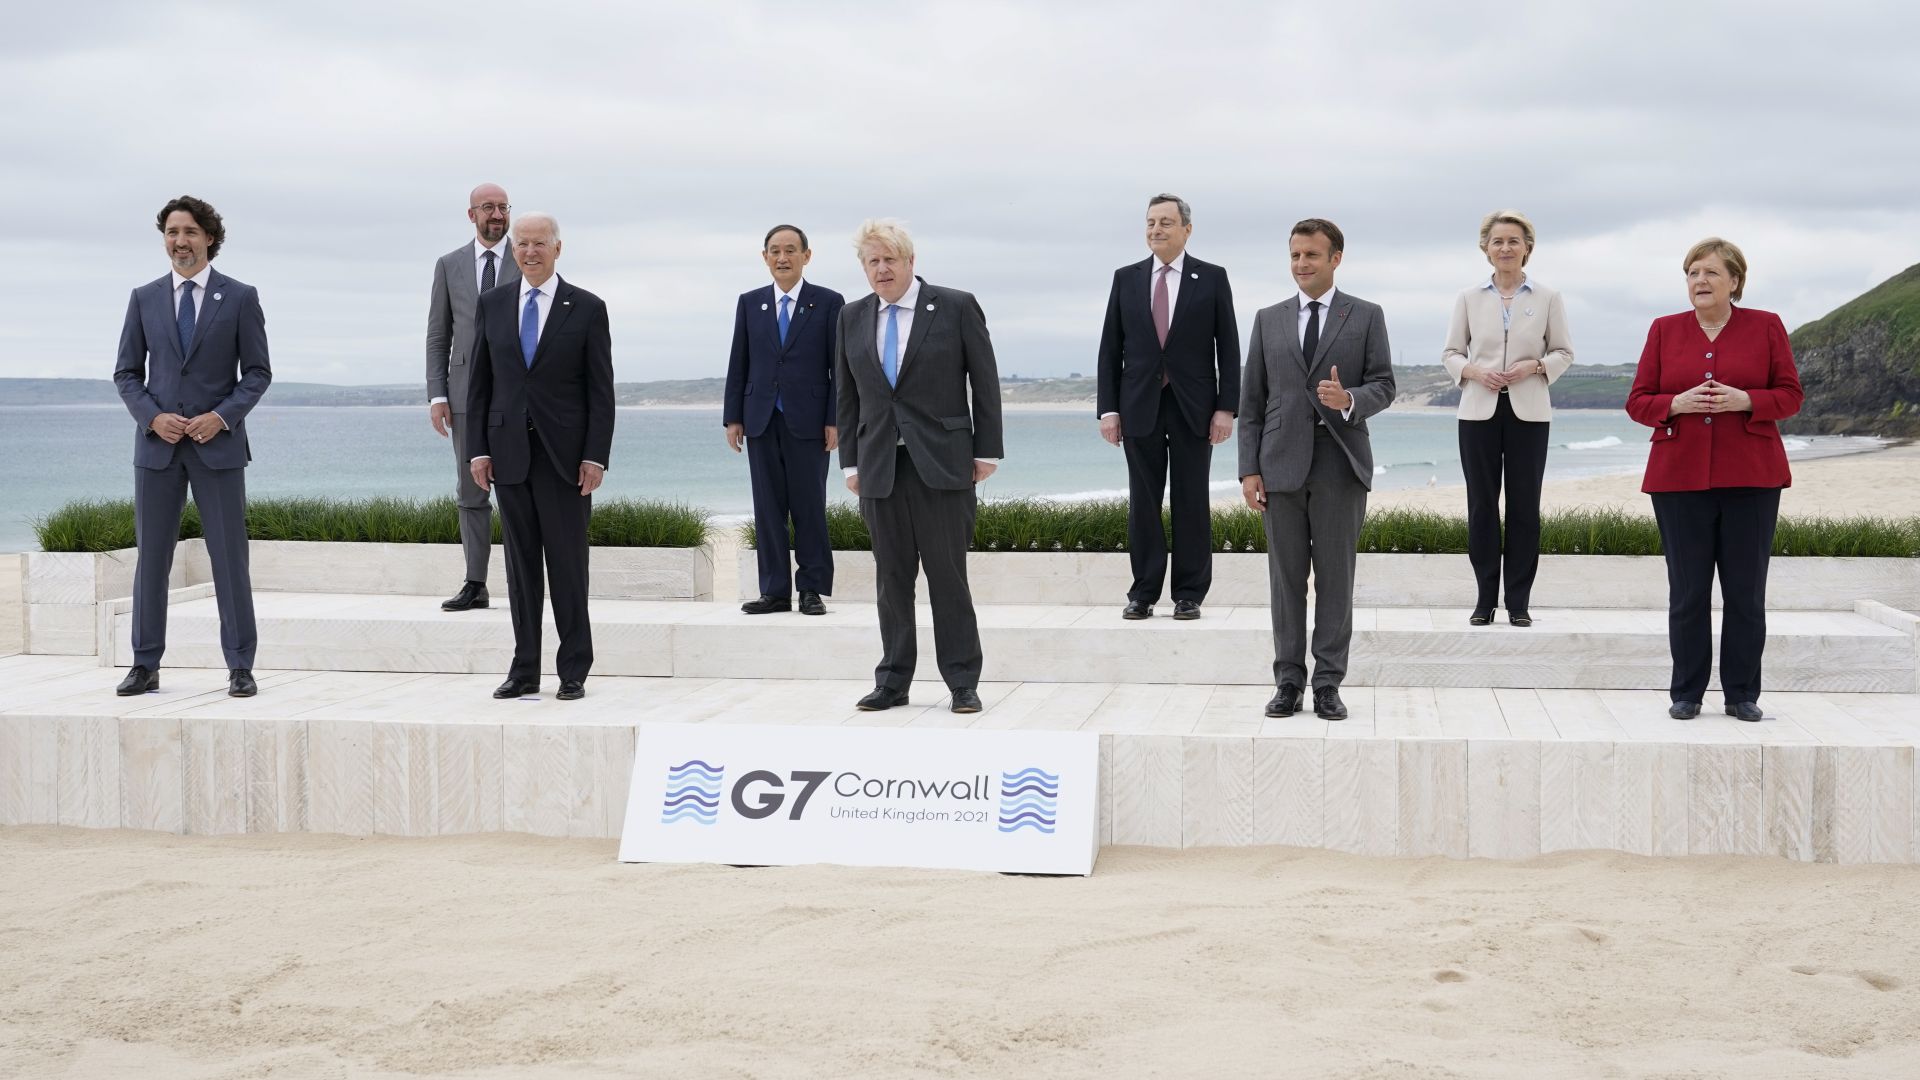 Срещата на върха на Г-7 започна с обща фотография на лидерите на плажа (снимки)